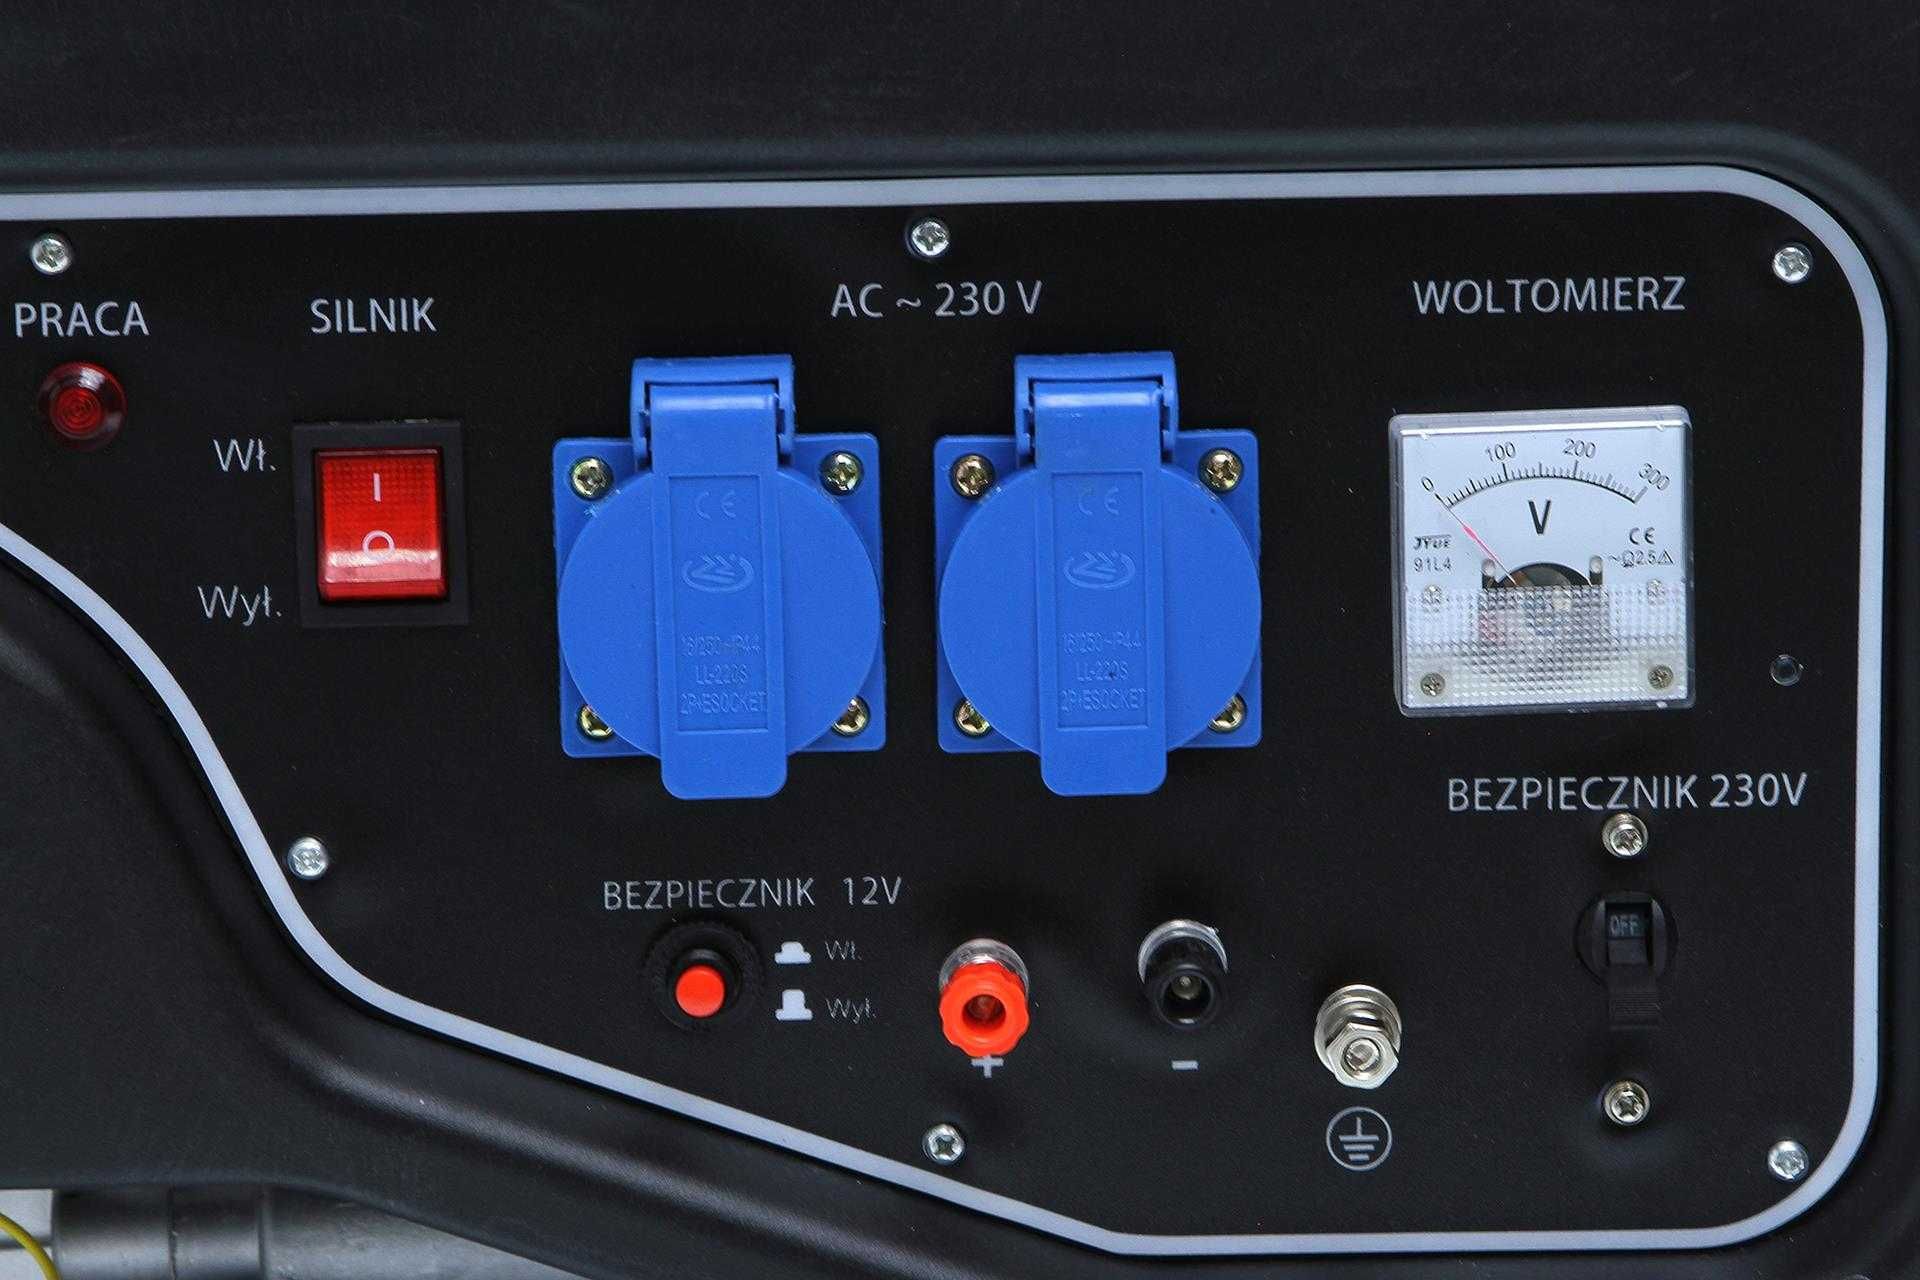 Przenośny generator prądu agregat  prądotwórczy RIPPER 230V